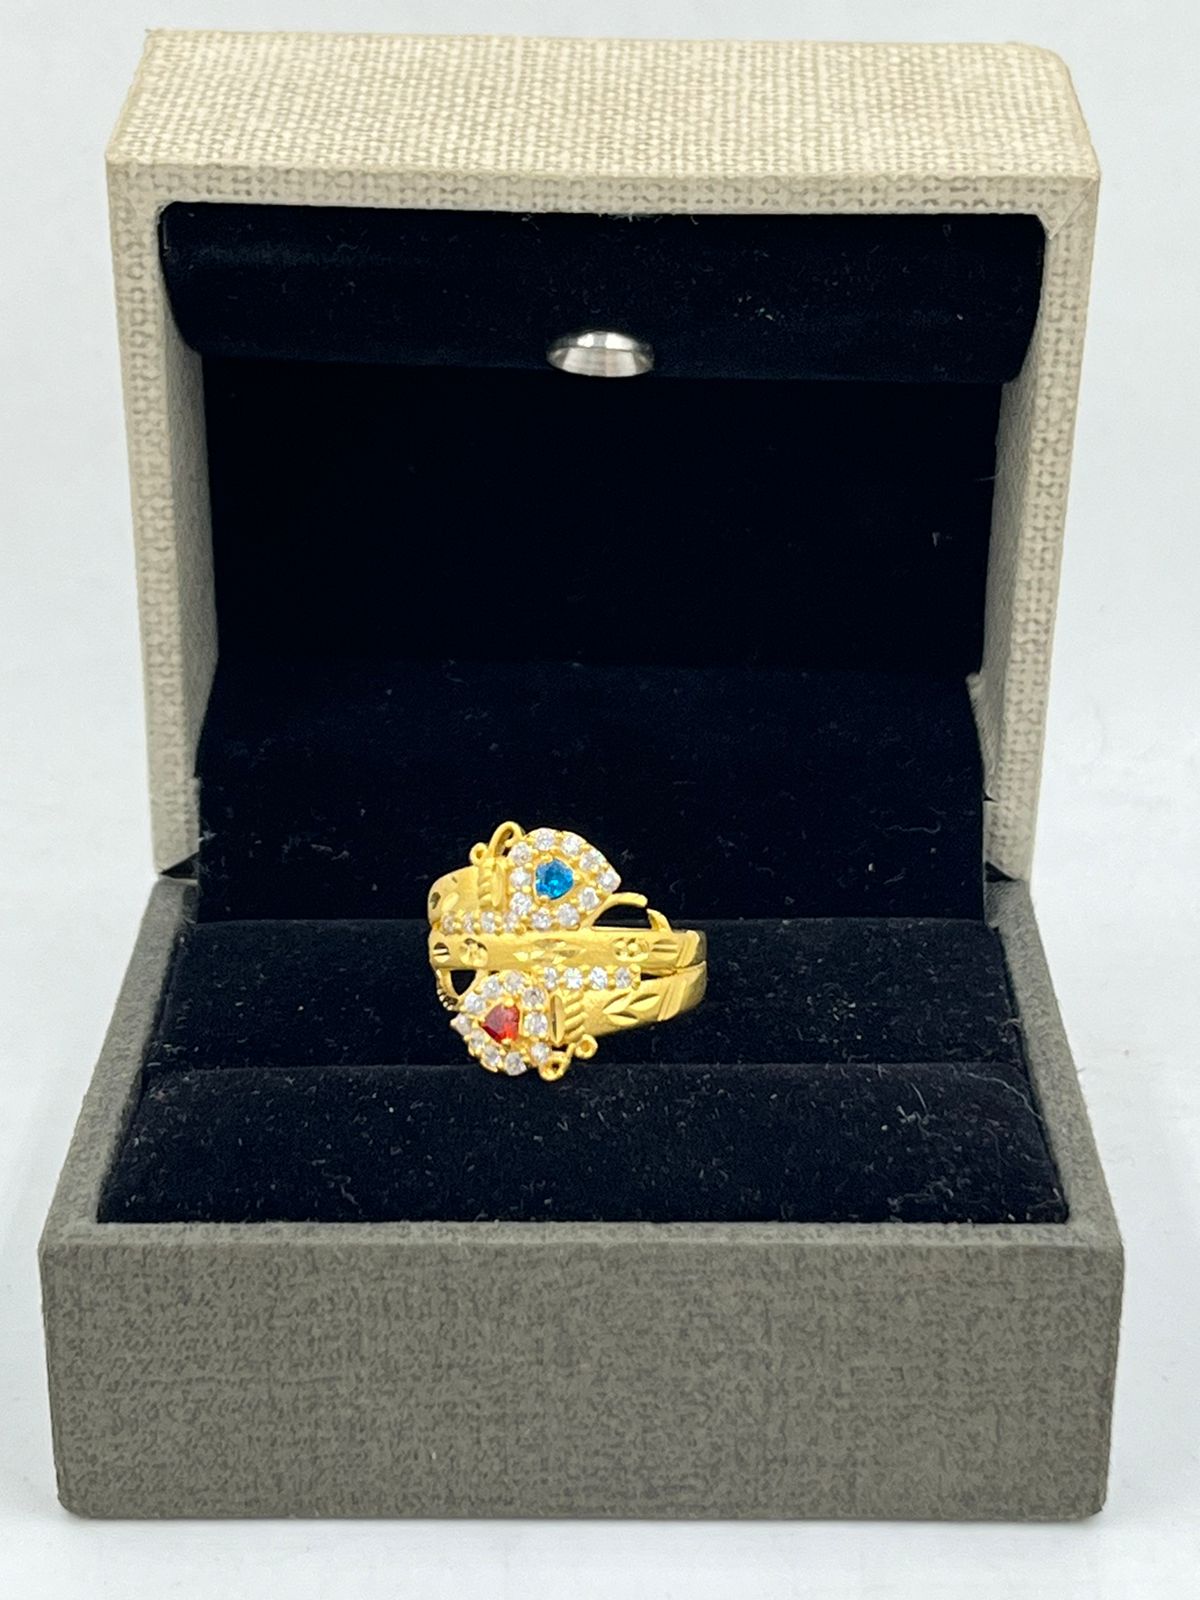 1 Gram Gold Ring 2 Gram Gold Ring Full Stock 1 gram jewellery More designs  Stylish & Richlook #MAJ - YouTube